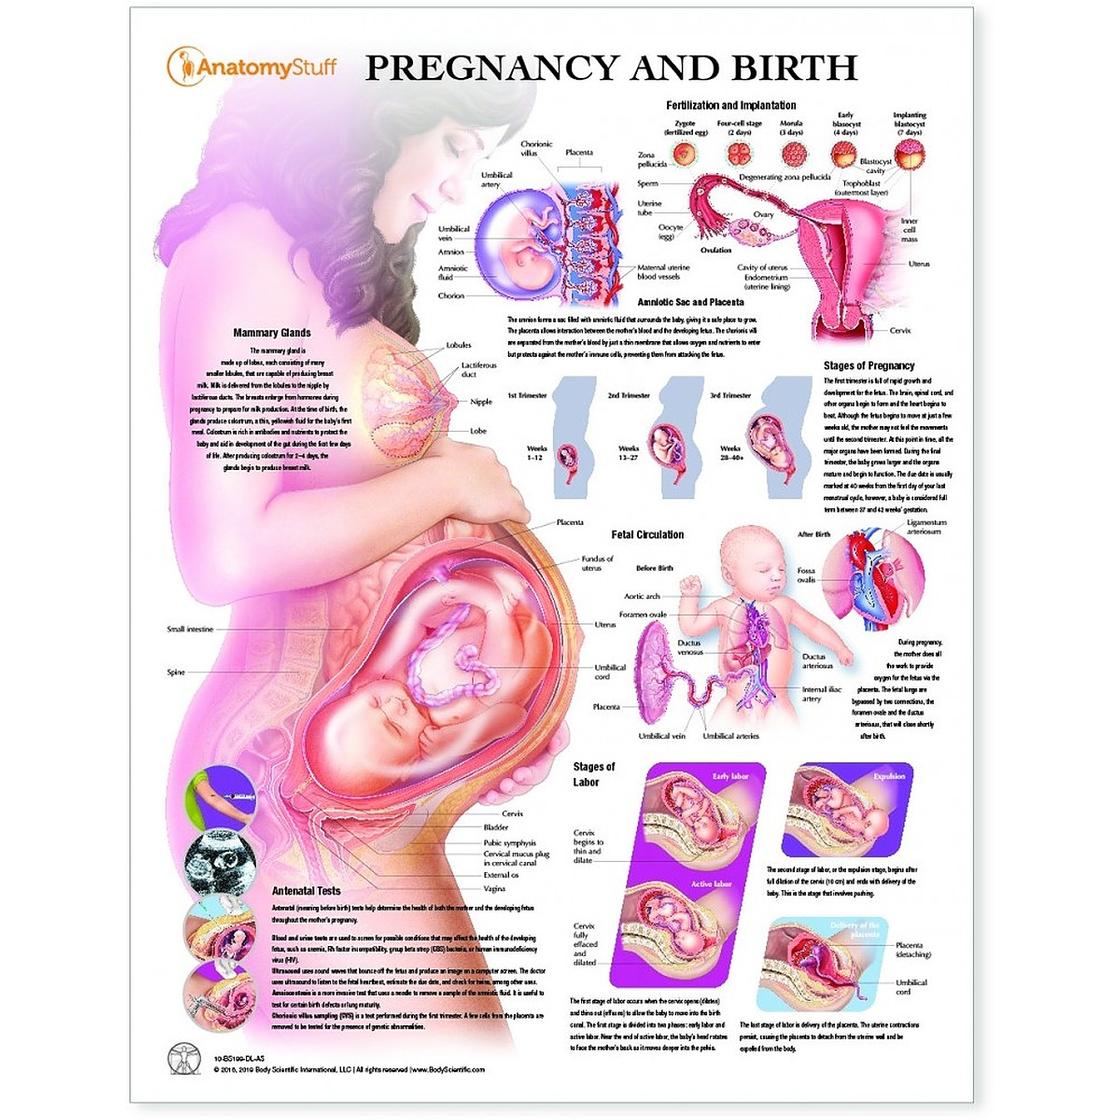 32 неделя беременности что происходит с мамой. Положение ребенка в животе на 33 неделе беременности. Плод в животе матери схема. Положение органов на 32 неделе беременности. Эмбрион 34 недели беременности вес плода.